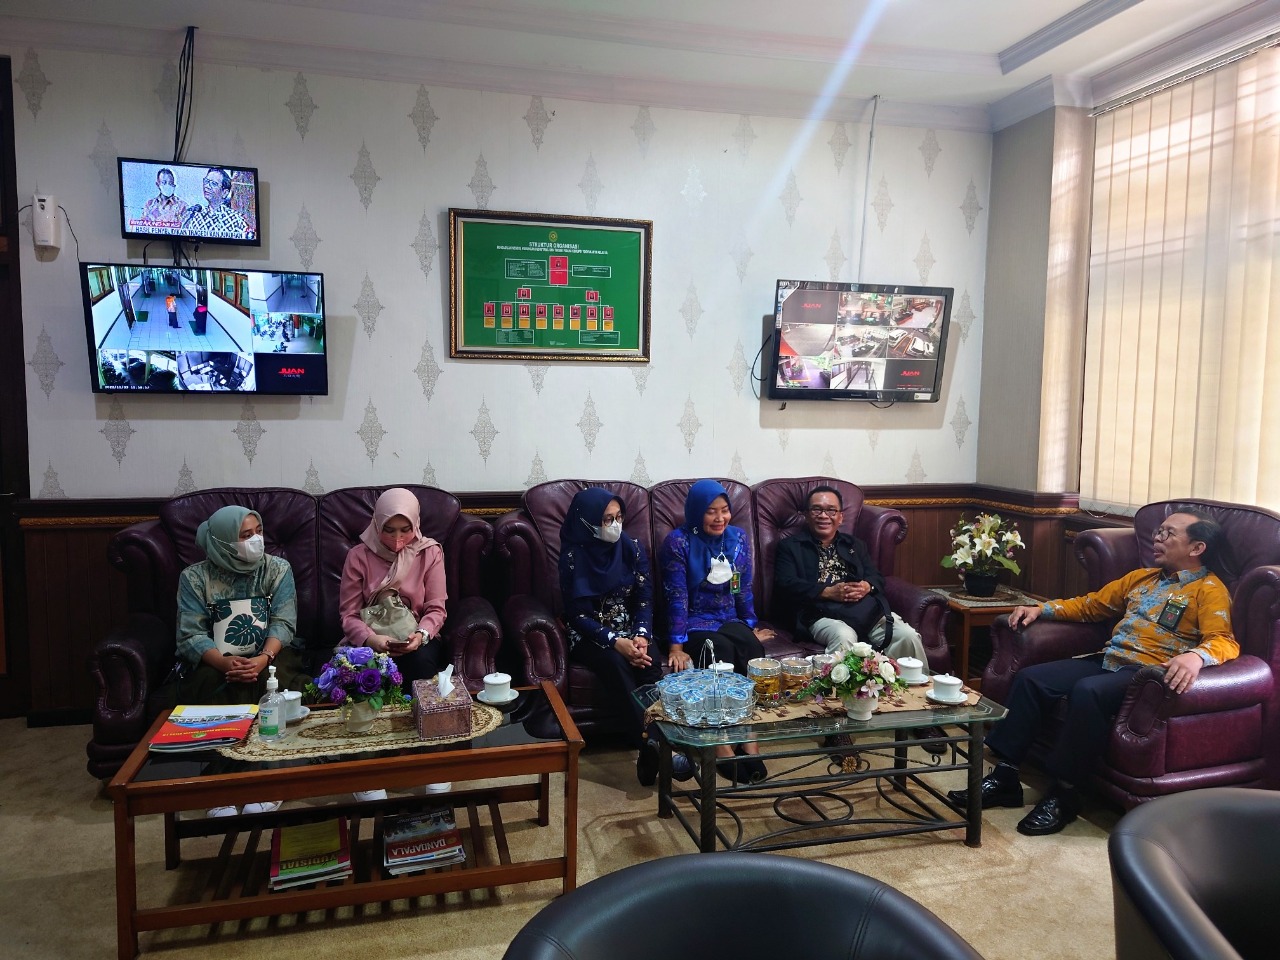 Pengadilan Negeri Yogyakarta Menerima Kunjungan Kerja dari Pusdiklat Manajemen dan Kepemimpinan, Badan Litbang Diklat Hukum dan Peradilan Mahkamah Agung RI